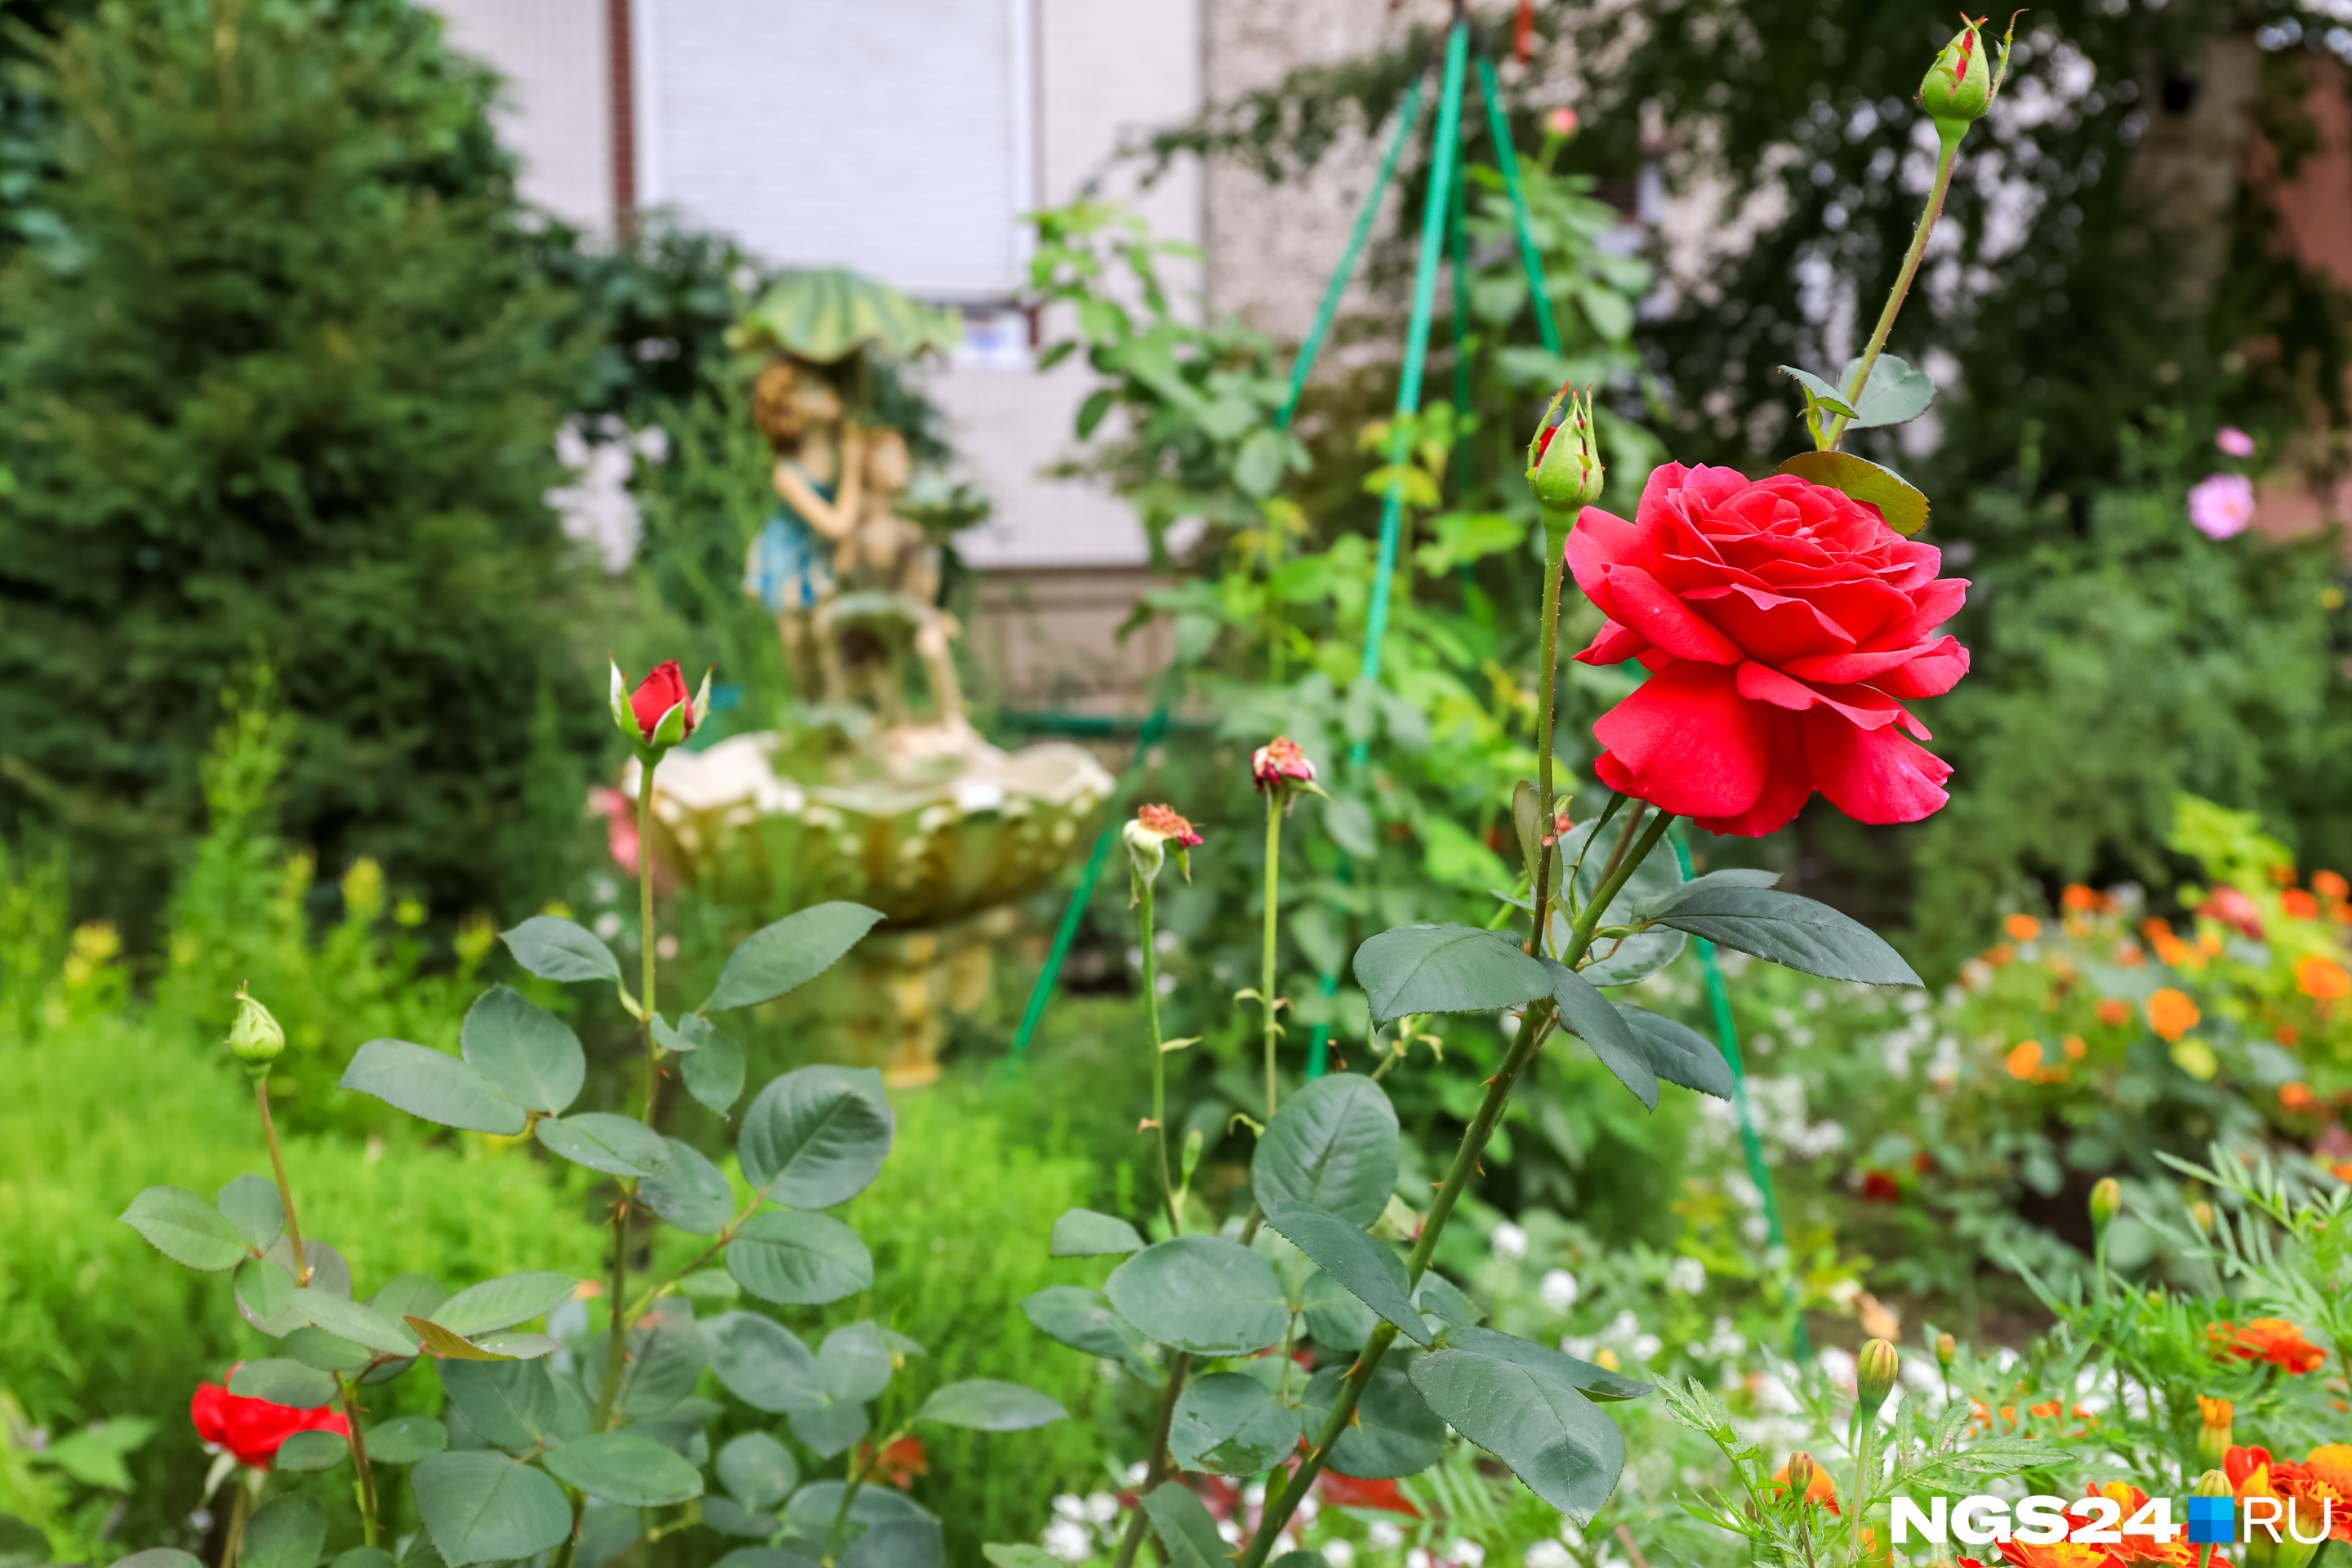 Во дворе у подъездов высажены розы. В море цветов стоят скульптуры